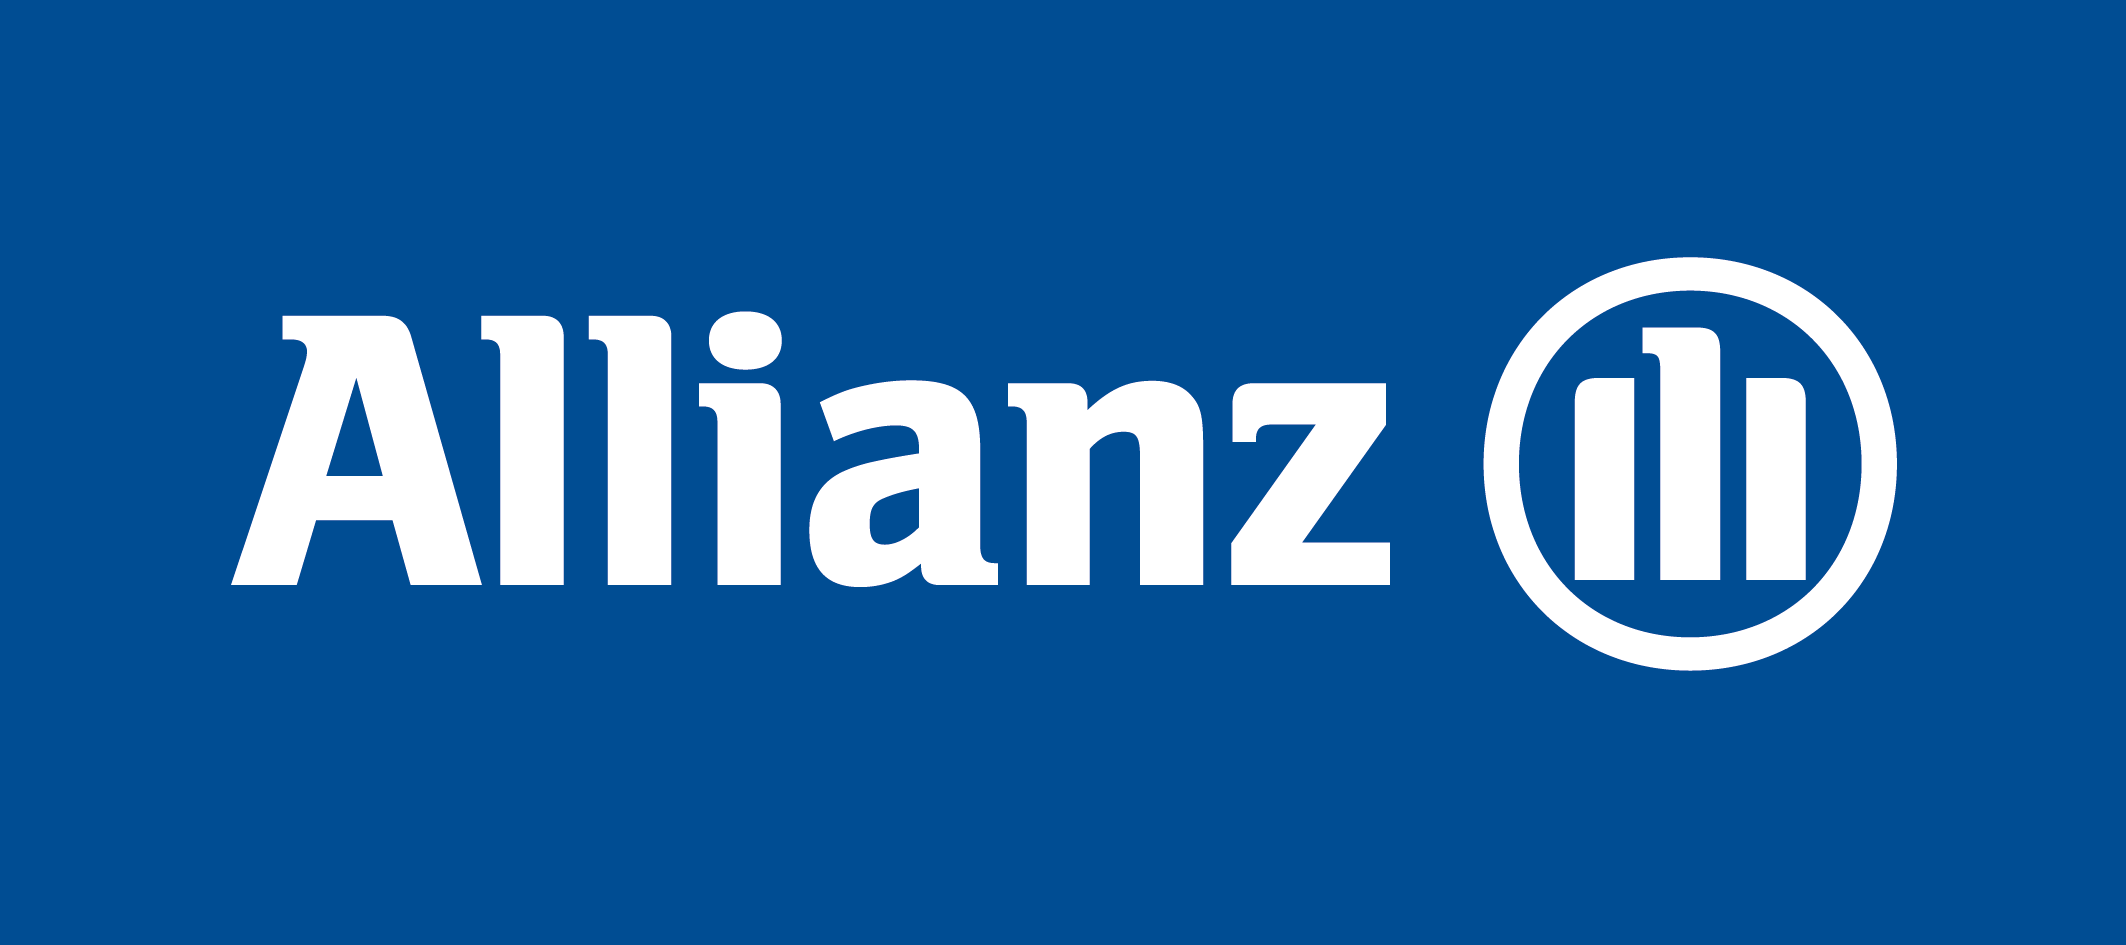 Allianz Beratungs- und Vertriebs AG